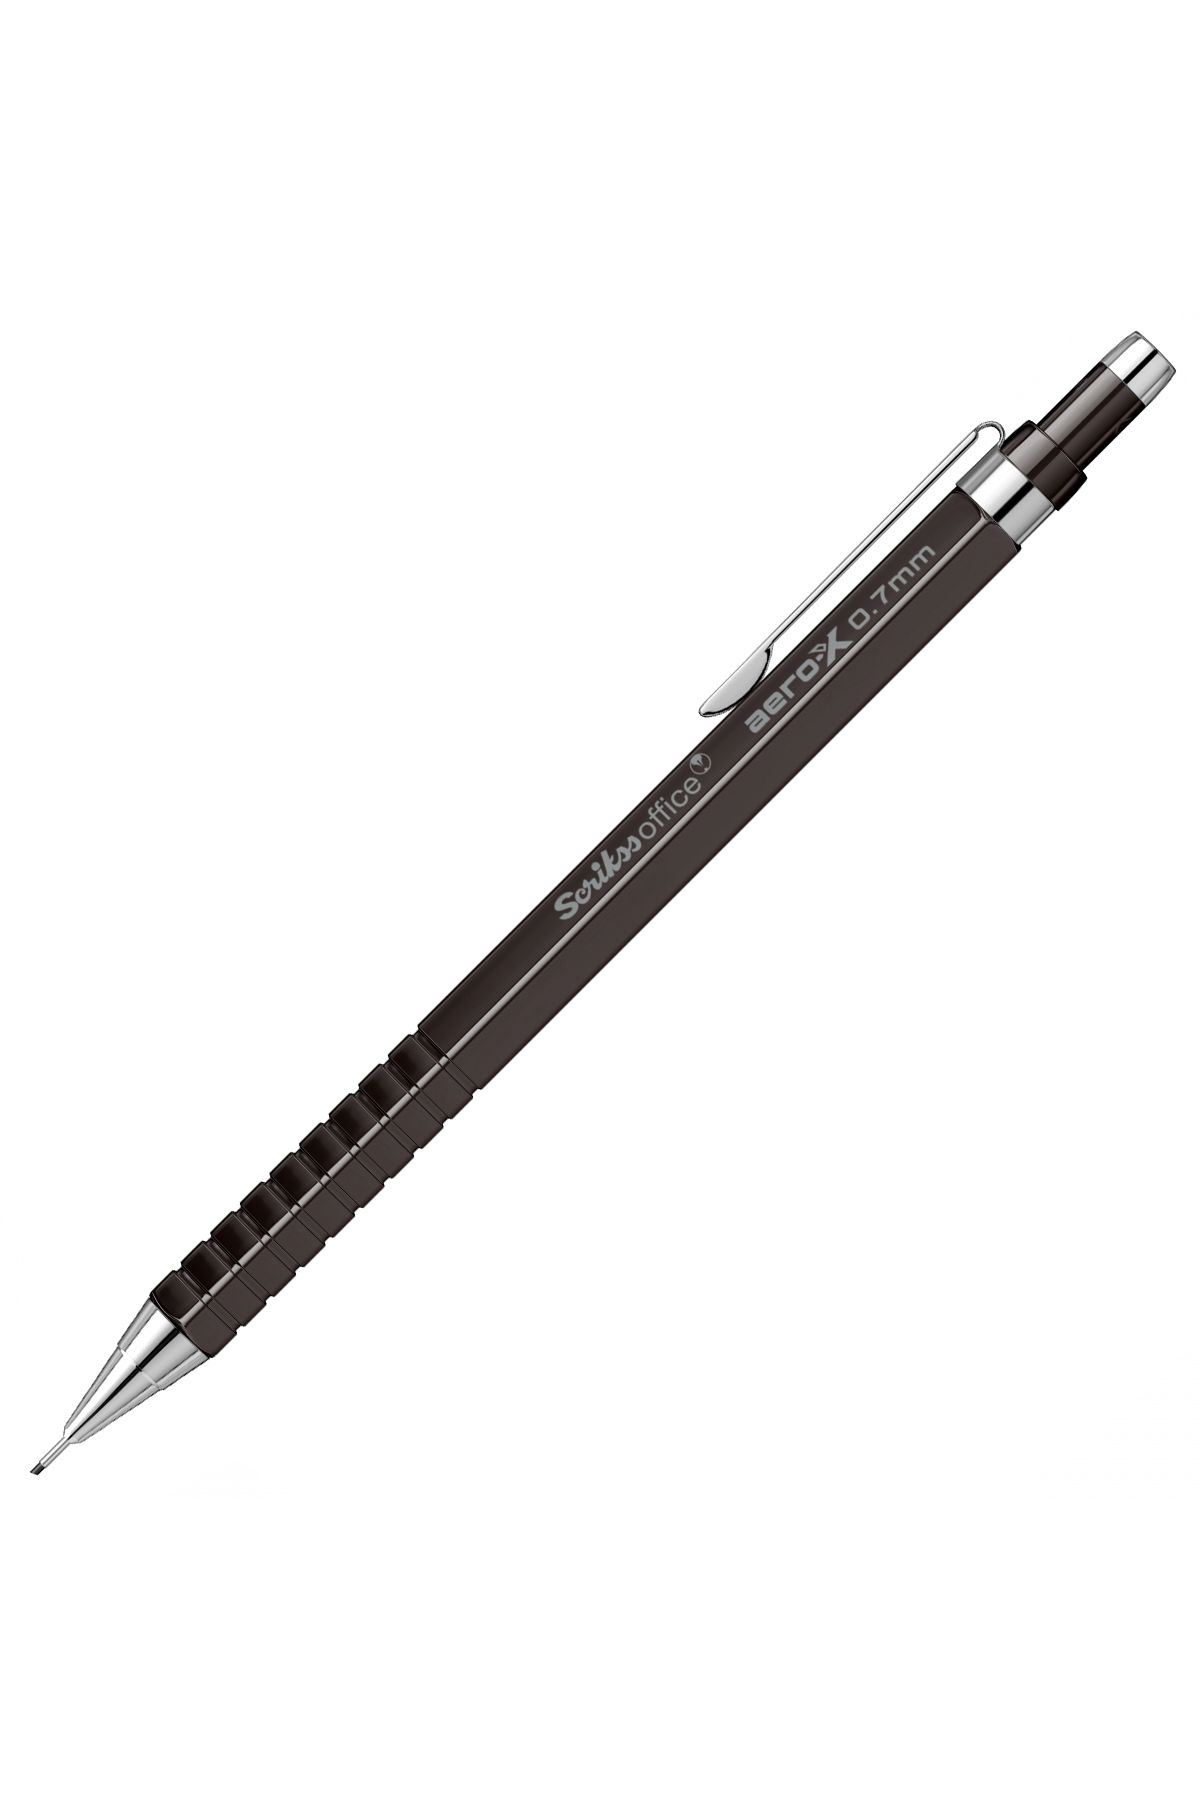 Scrikss Aero-X Mekanik Kurşun Kalem 0.7mm Siyah